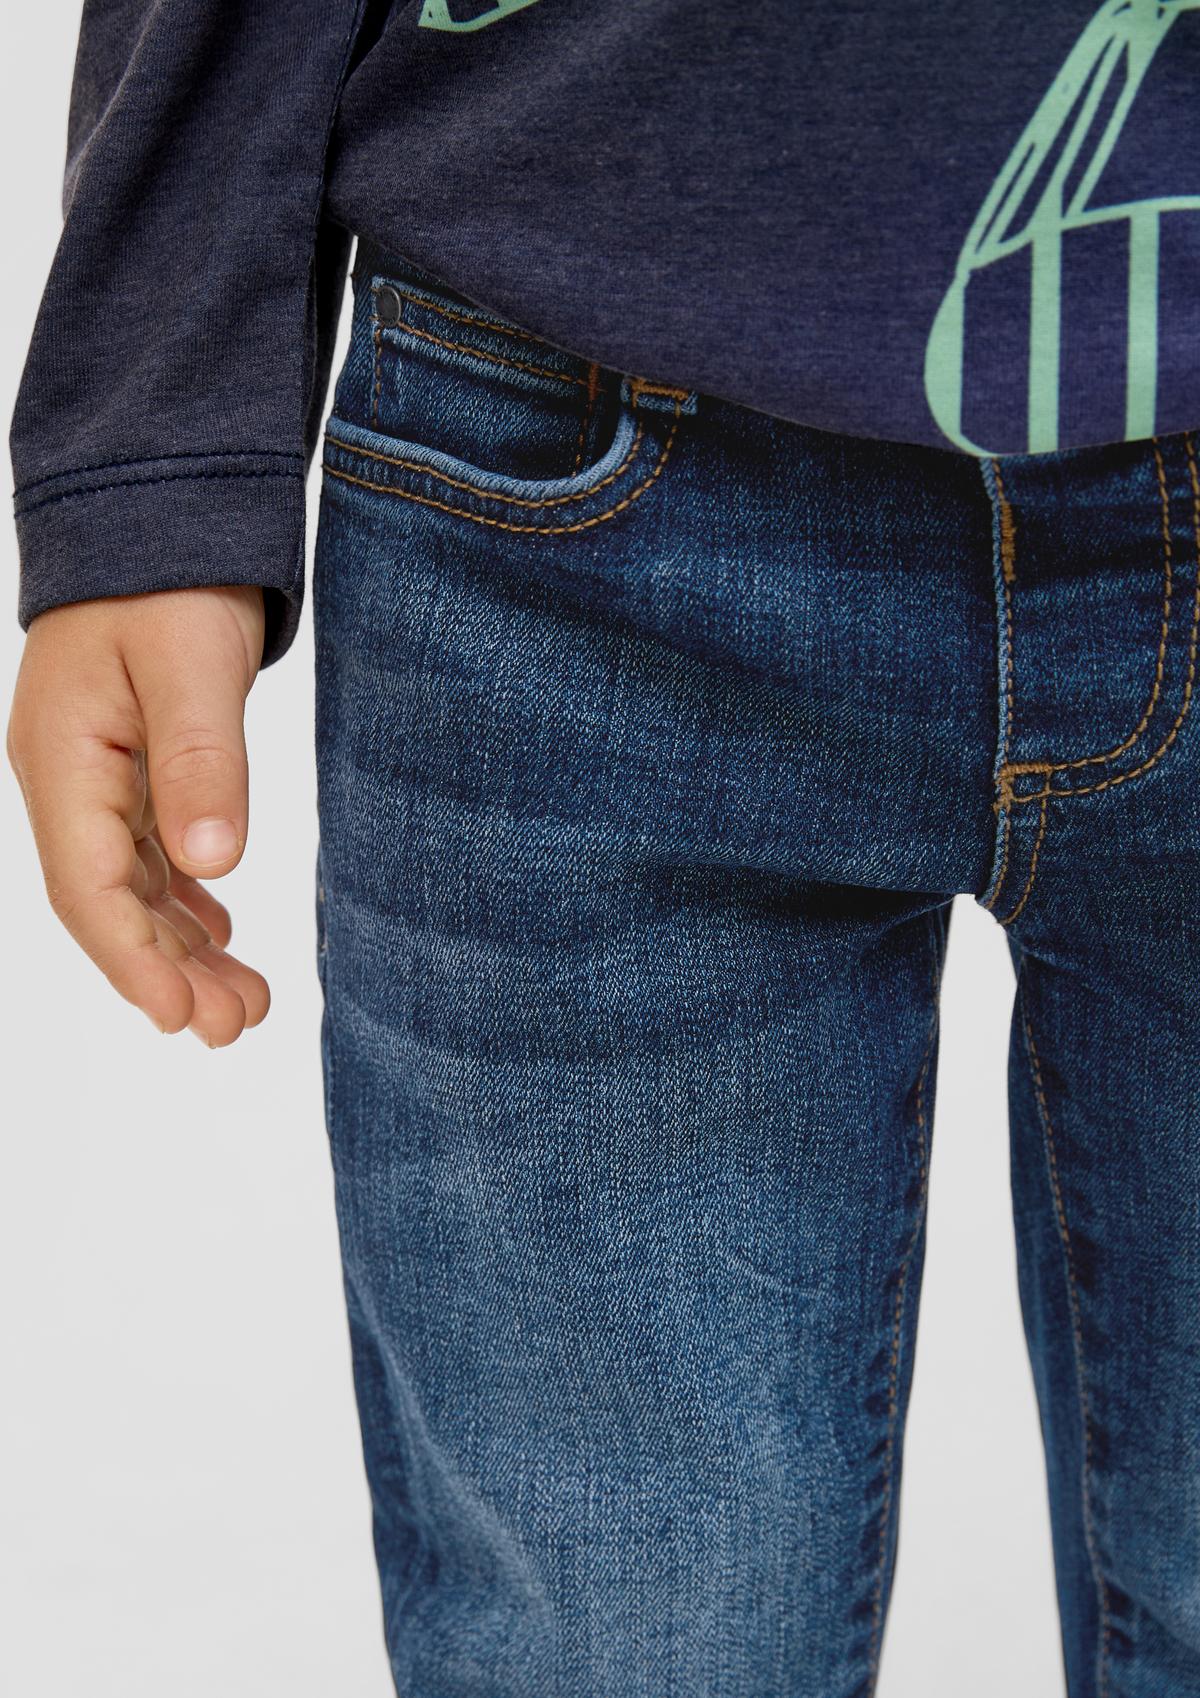 s.Oliver Brad: Width-adjustable jeans